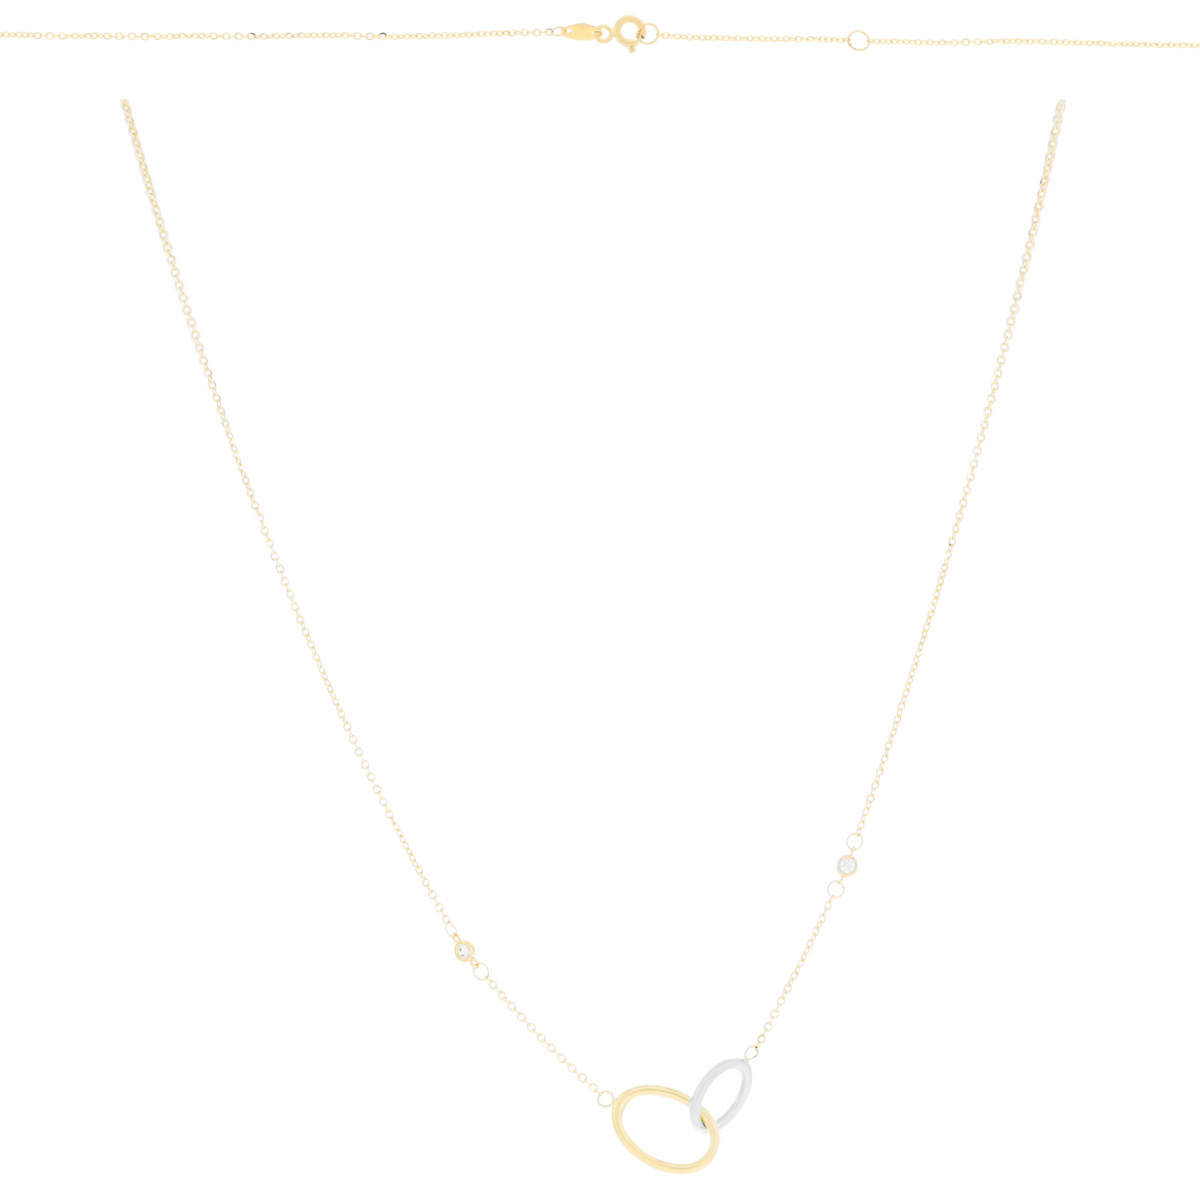 Złoty naszyjnik owalne kształty, okrągłe cyrkonie, dwa kolory złota pr. 585